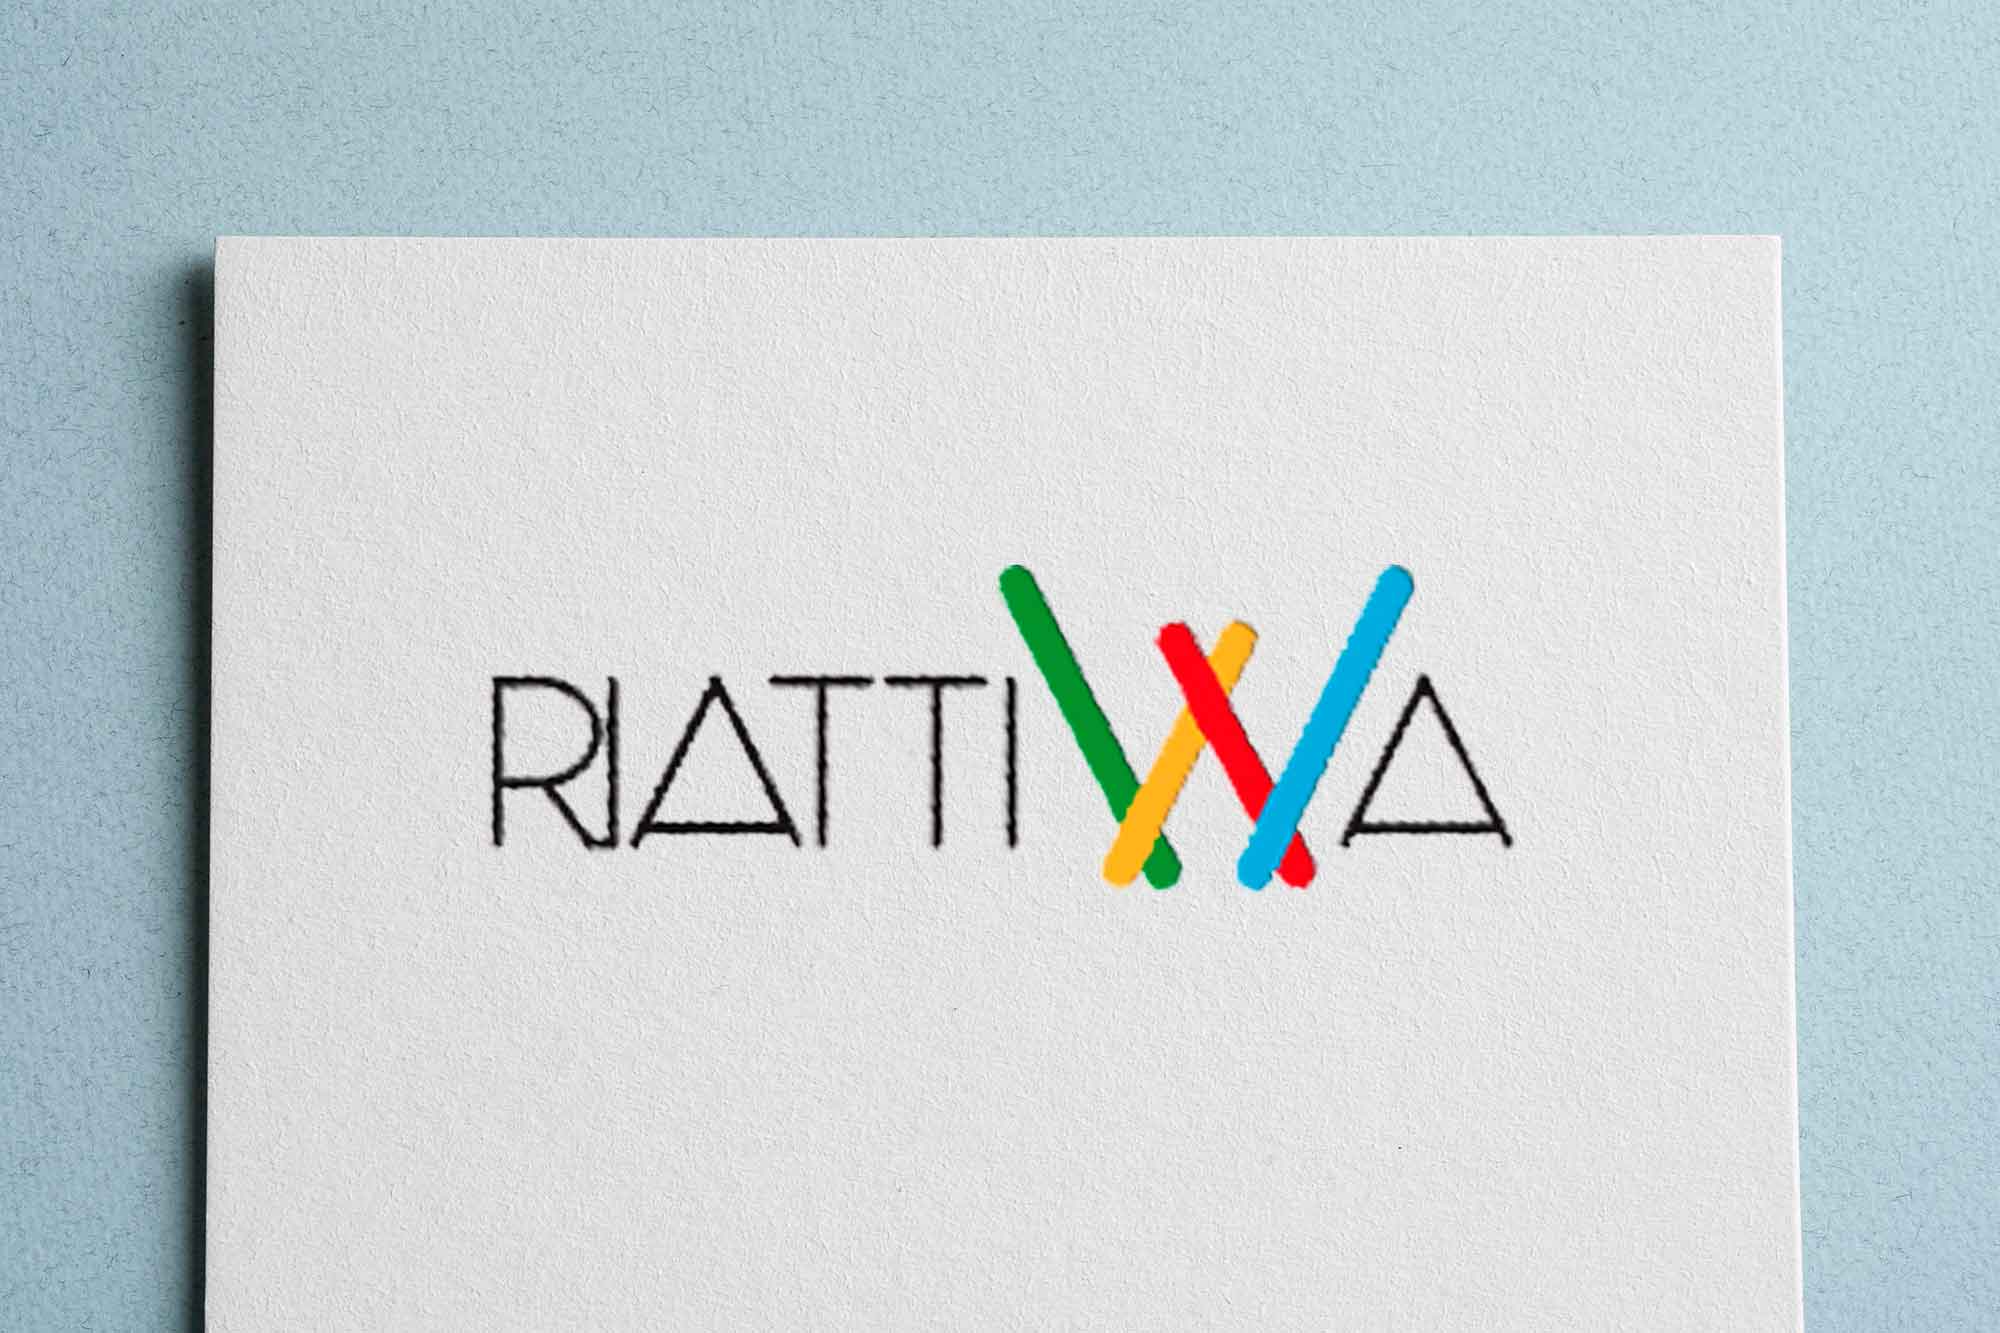 riattiwa-recupero urbano-chiara rango-web and book